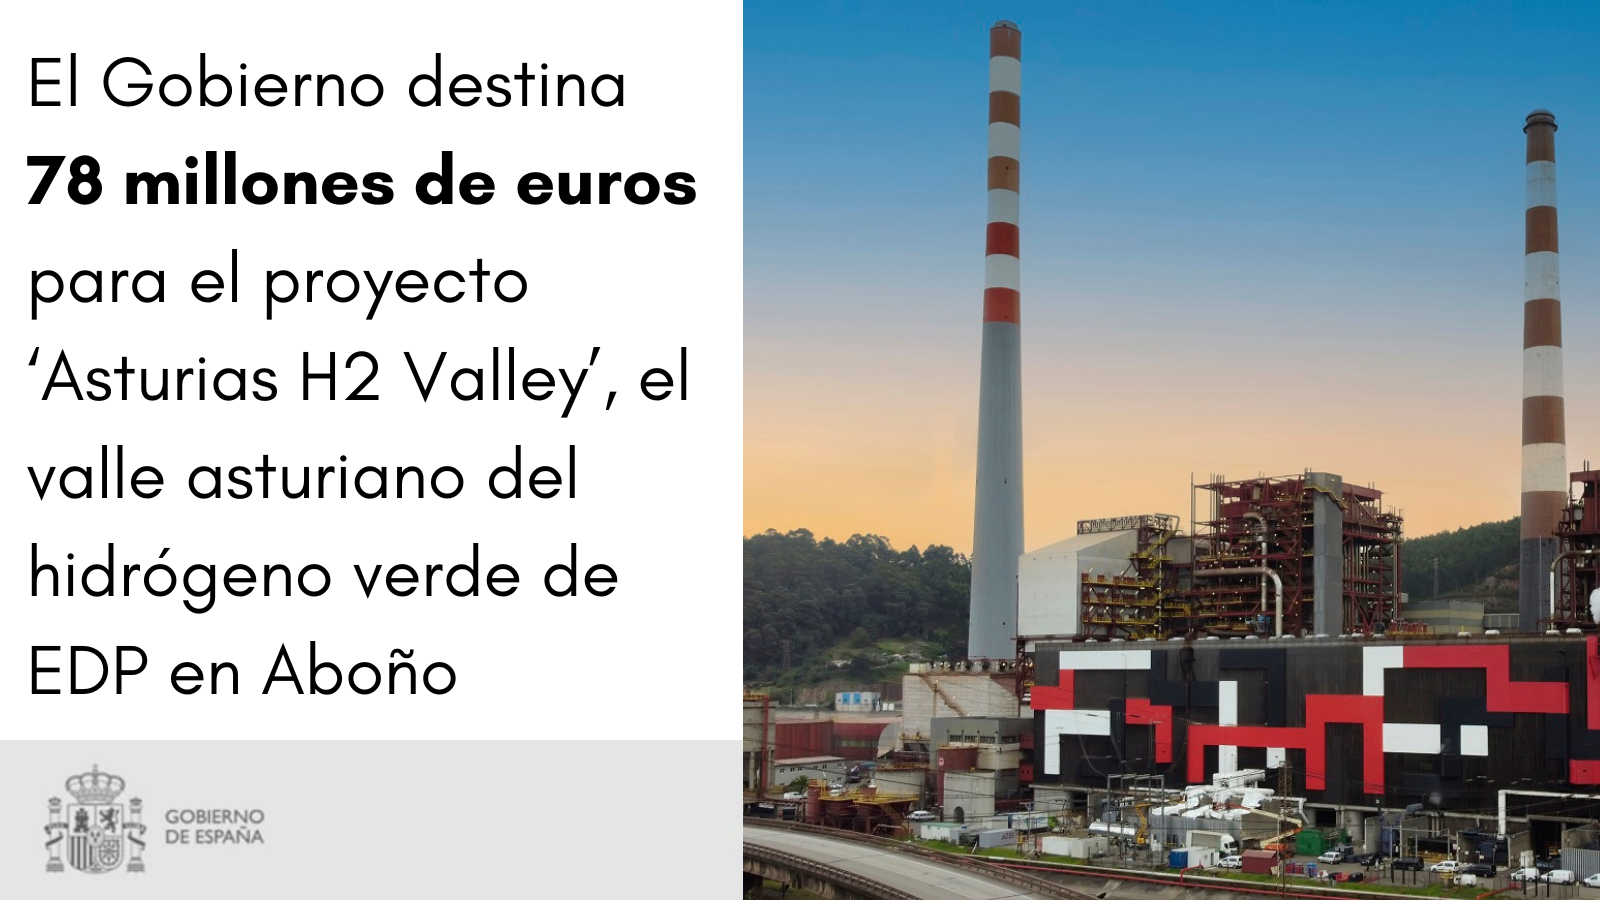 El Gobierno destina 78 millones de euros a Asturias para un proyecto de clústeres y tecnologías industriales de hidrógeno renovable del IPCEI Hy2Use